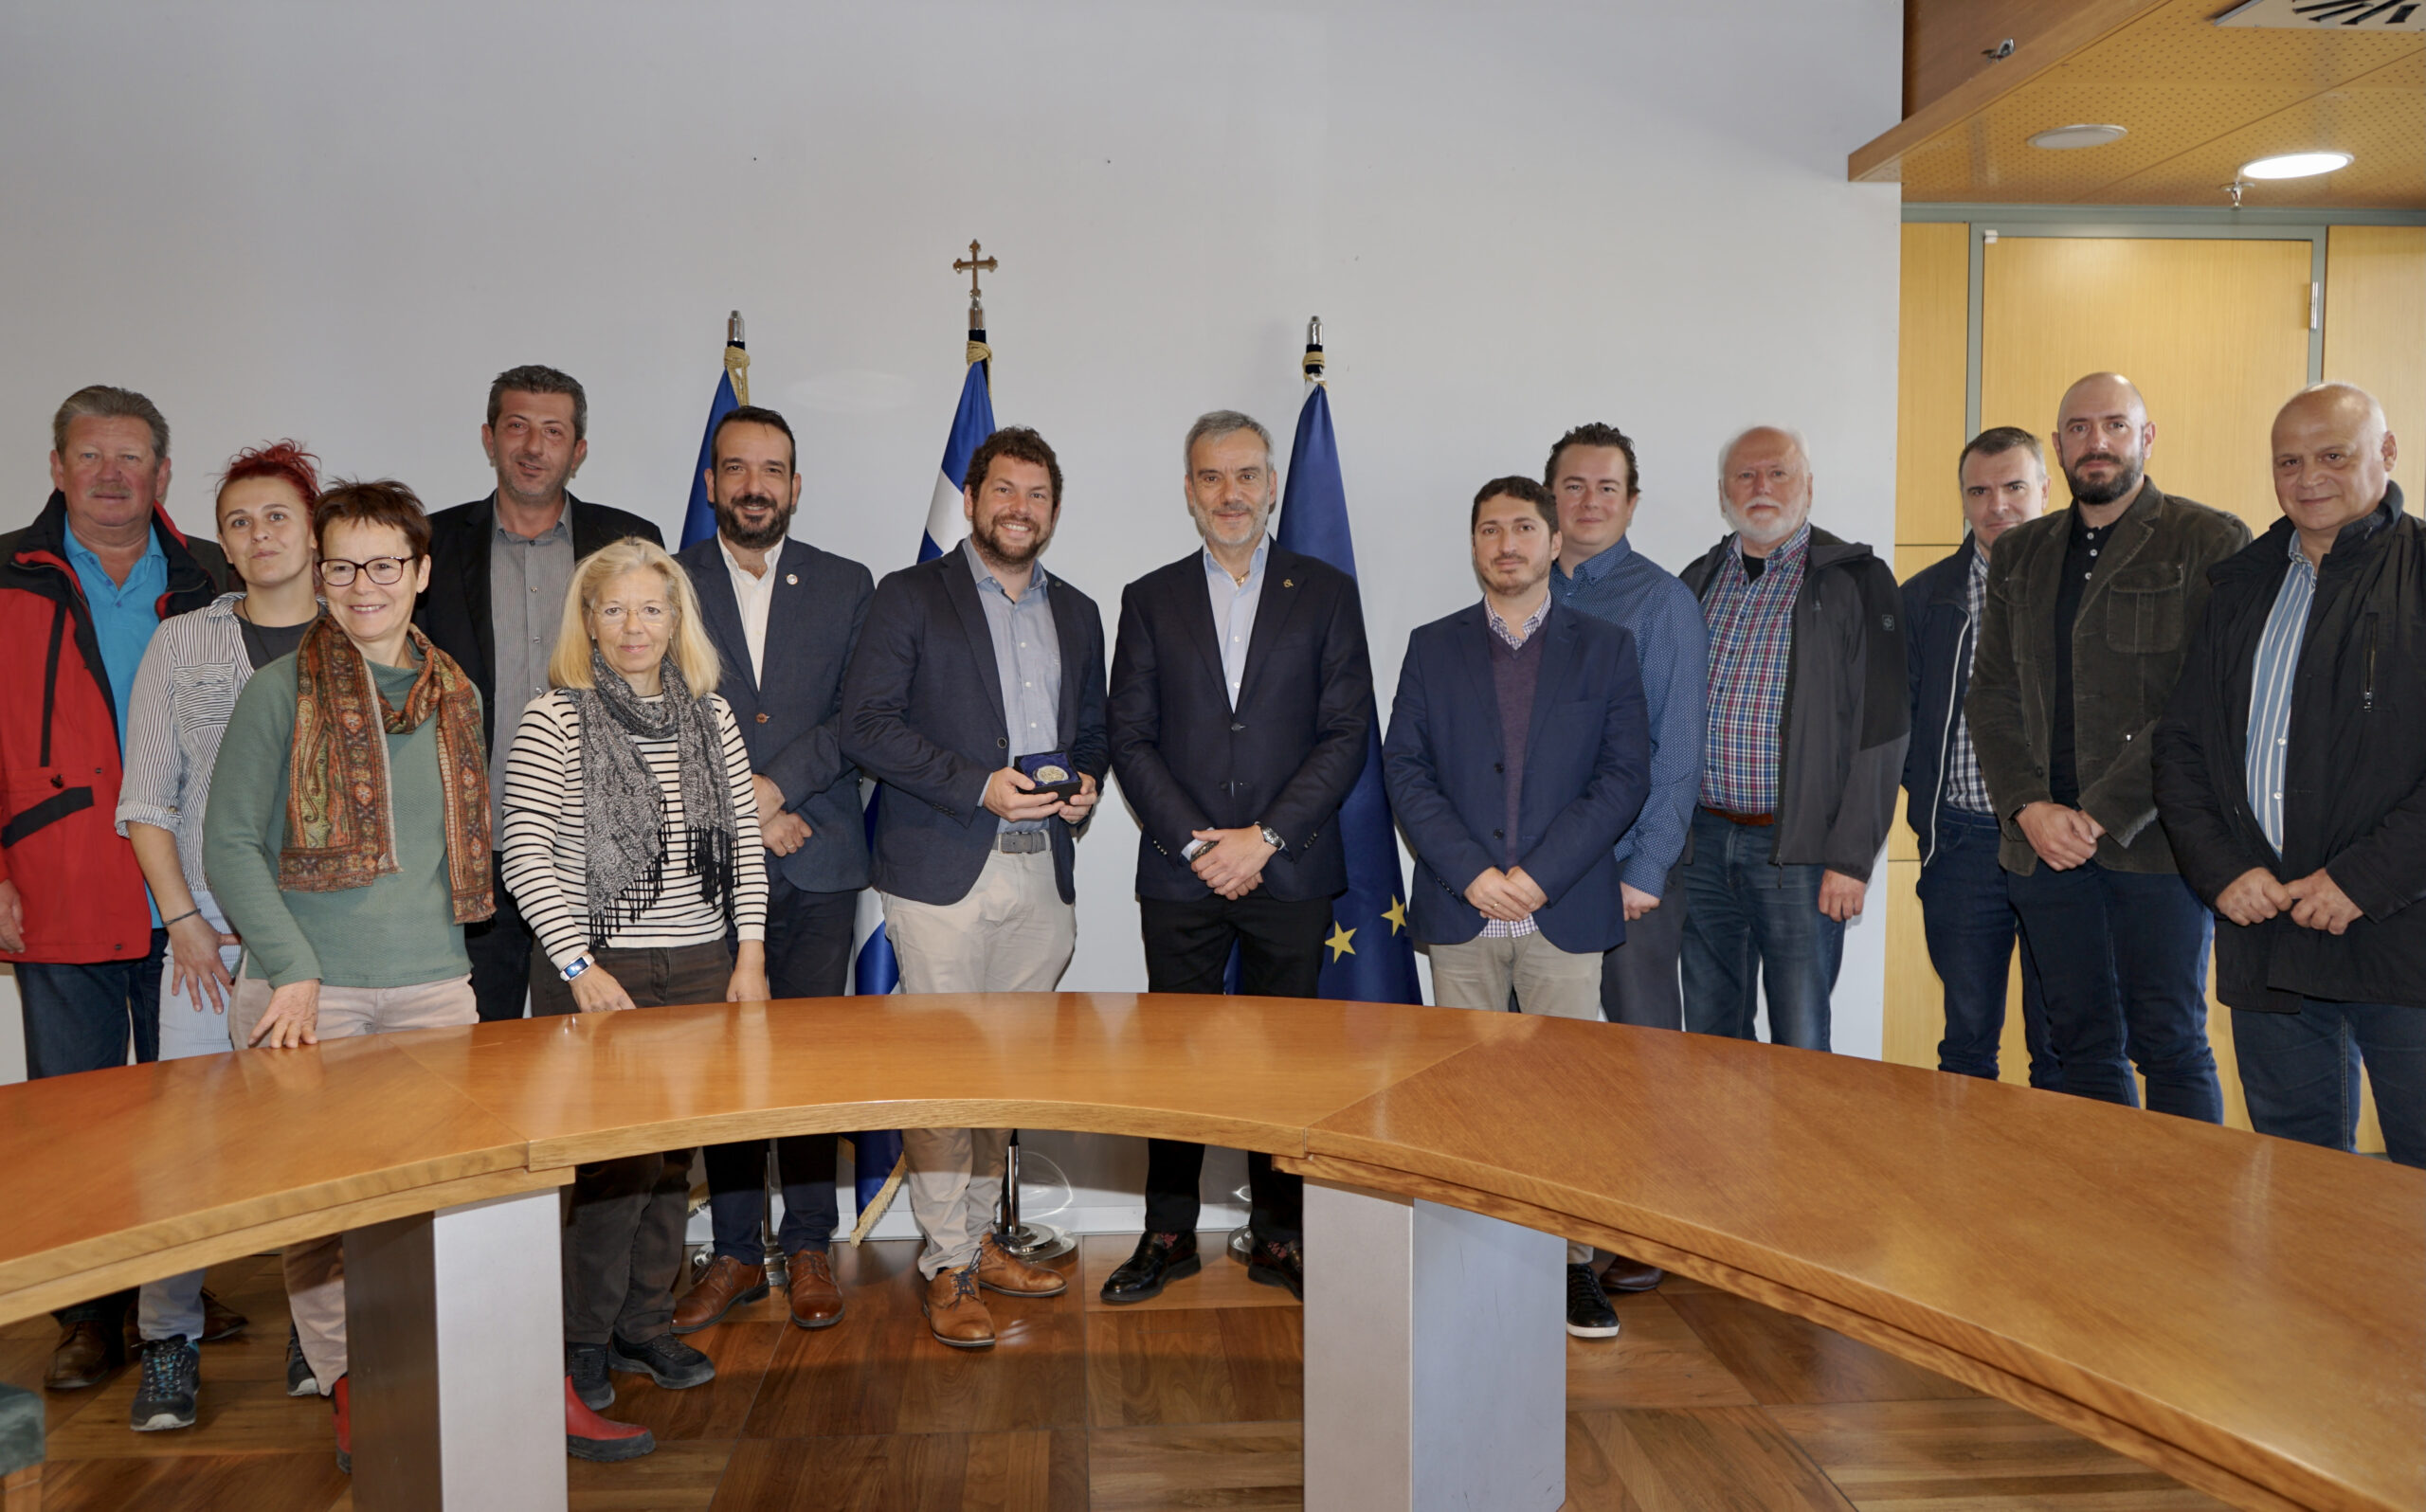 Αντιπροσωπεία της Ομοσπονδίας Εργατών Αυστρίας στο Δημαρχείο Θεσσαλονίκης – Συνάντηση με τον Δήμαρχο Κ. Ζέρβα